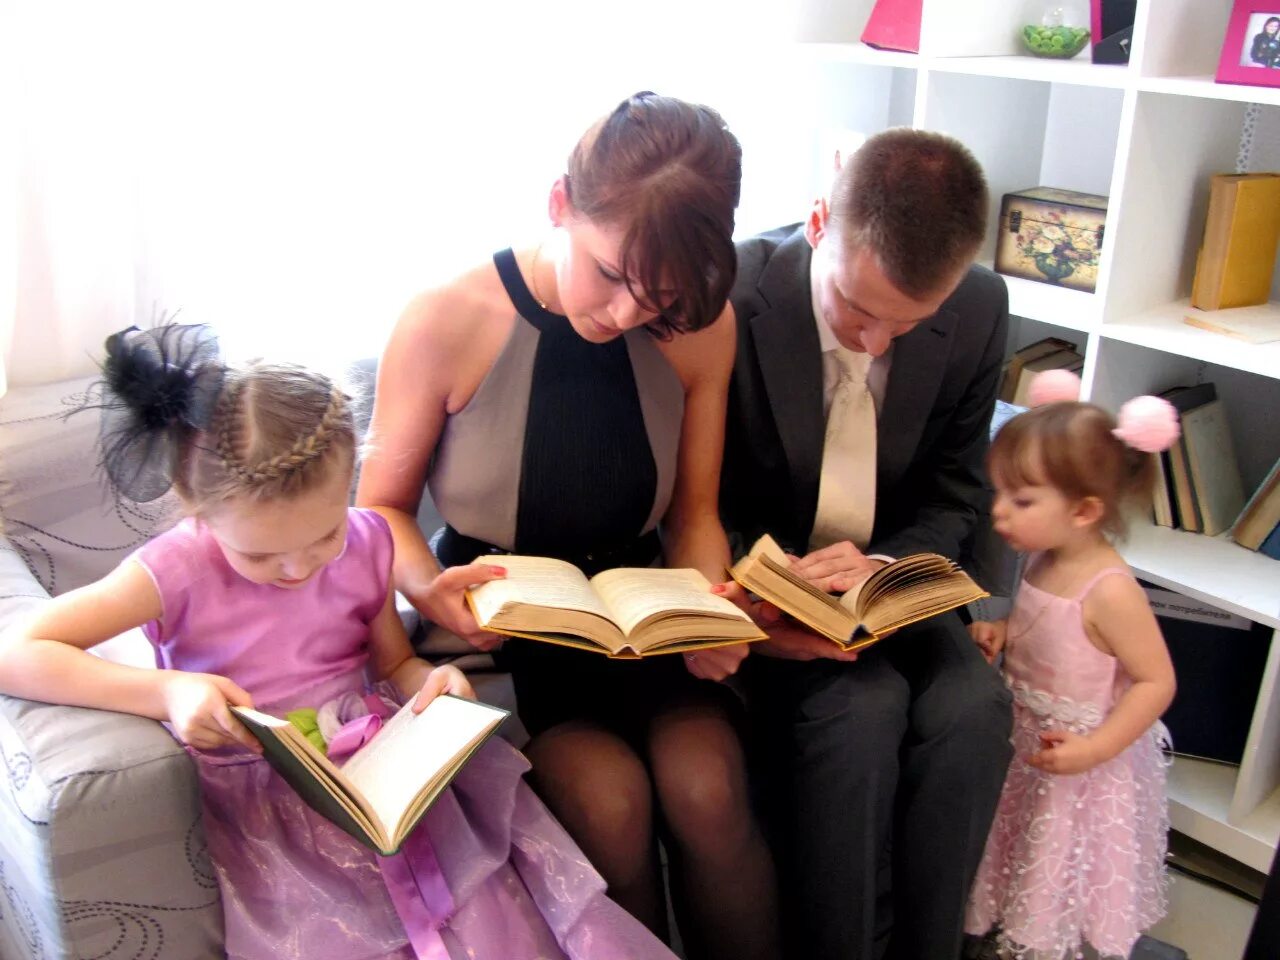 12 и 7 читать. Чтение книг семьей. Семейное чтение в библиотеке. Читающая семья. Круг семейного чтения.